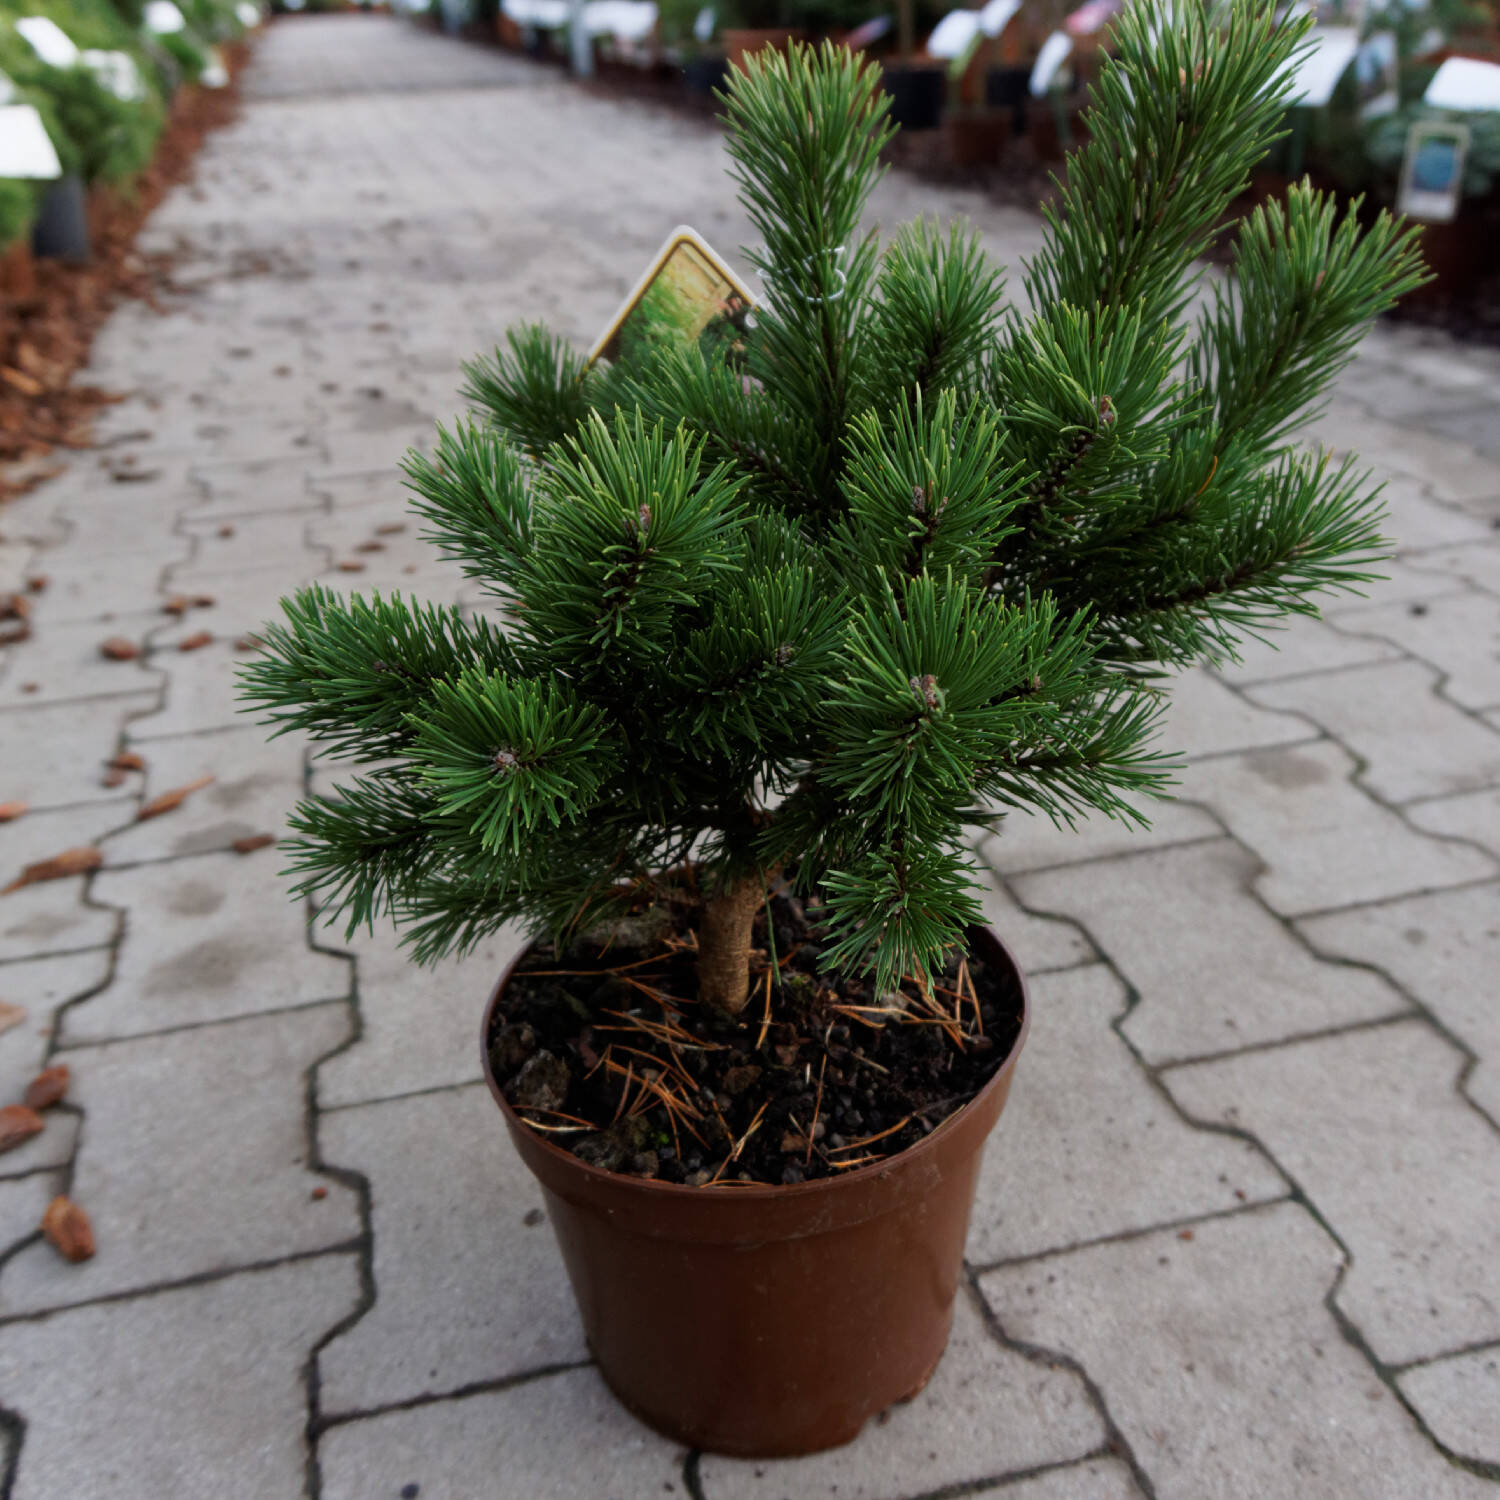 Kategorie <b>Nadelbäume u. Koniferen </b> - Zwerg- Strauch-Kiefer 'Gnom' - Pinus mugo 'Gnom'